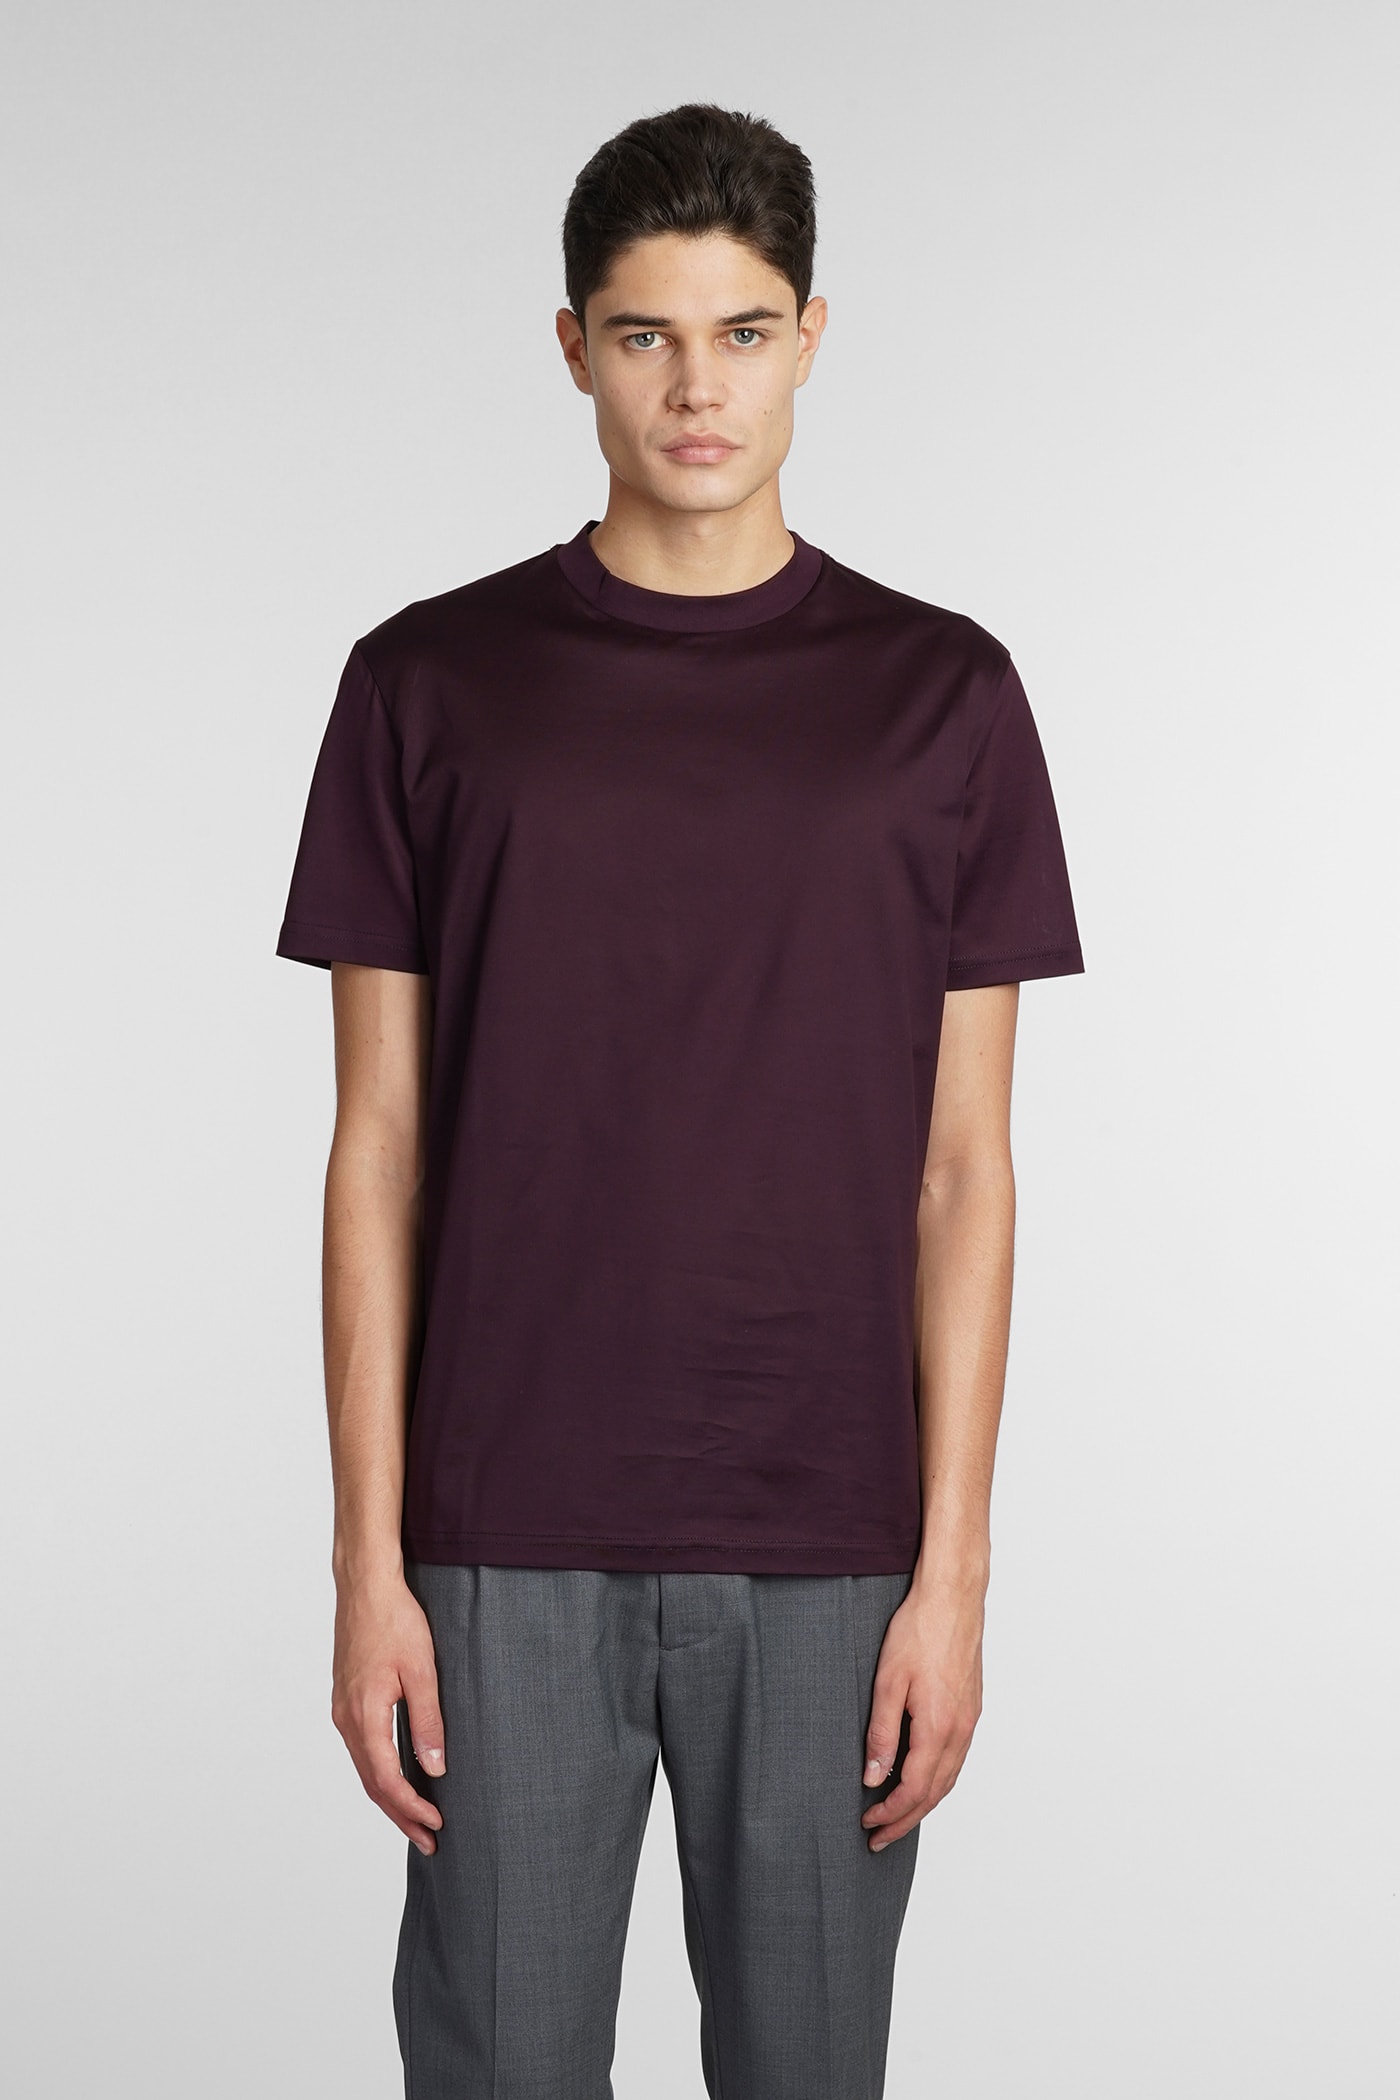 Low Brand T-shirt In Bordeaux Cotton